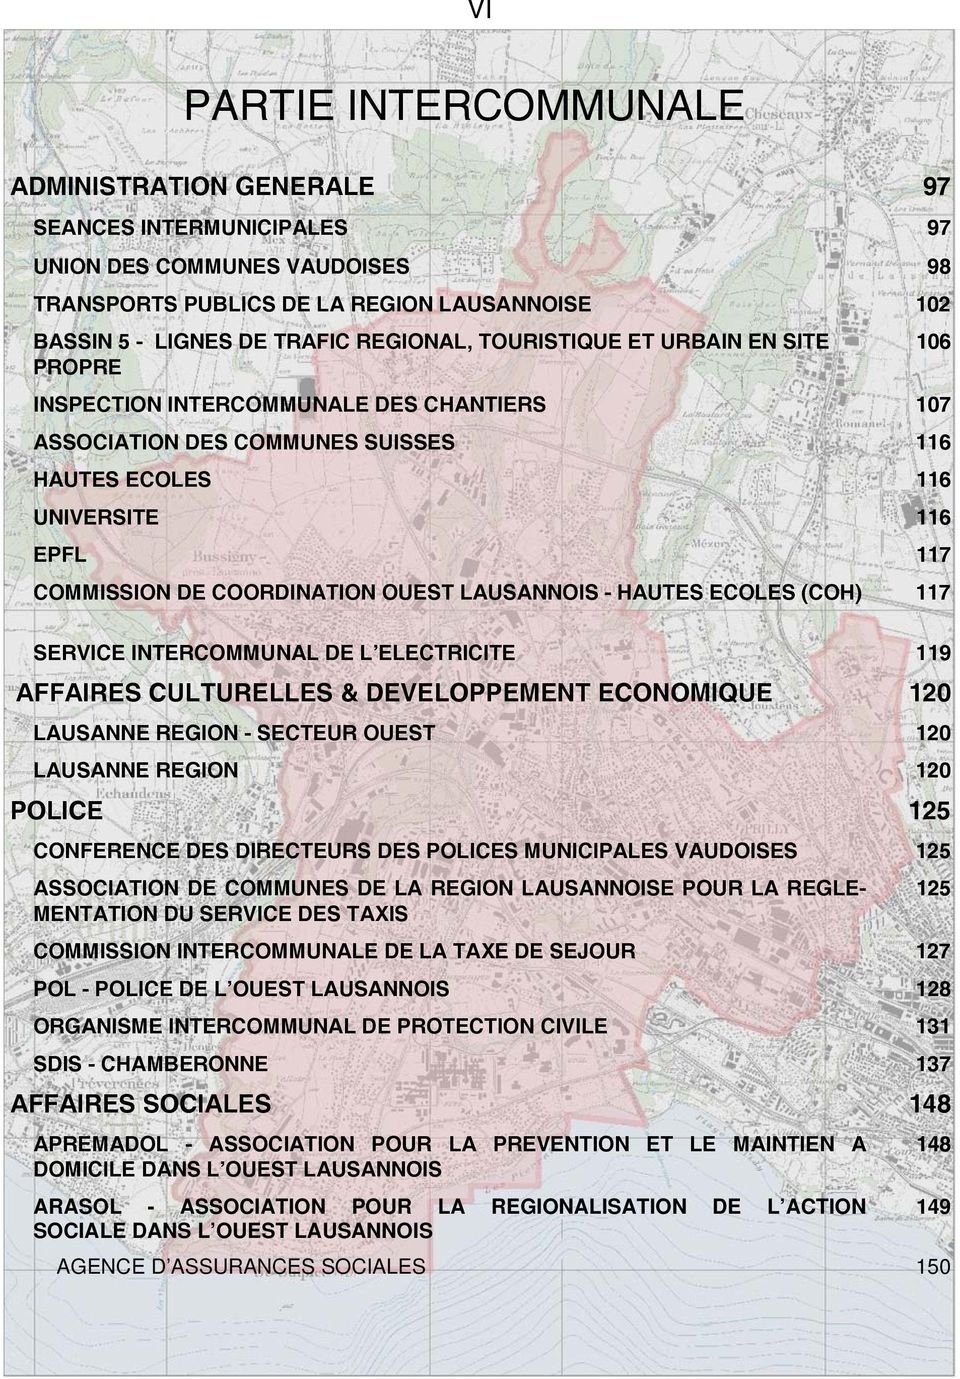 LAUSANNOIS - HAUTES ECOLES (COH) 117 SERVICE INTERCOMMUNAL DE L ELECTRICITE 119 AFFAIRES CULTURELLES & DEVELOPPEMENT ECONOMIQUE 120 LAUSANNE REGION - SECTEUR OUEST 120 LAUSANNE REGION 120 POLICE 125